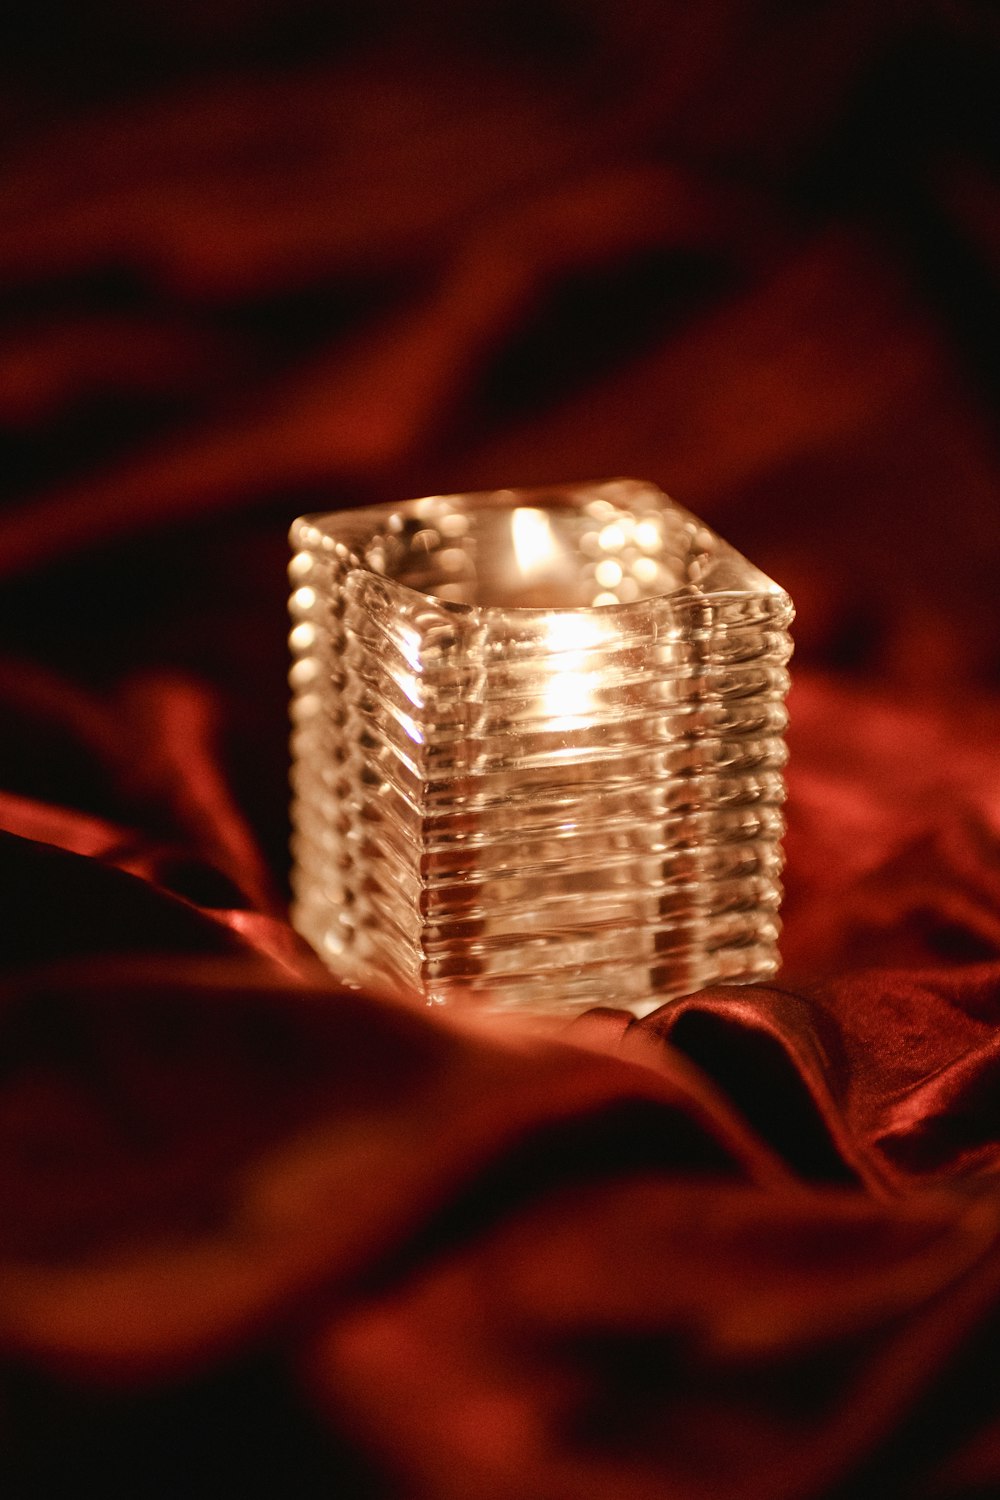 빨간 담요 위에 놓인 촛불